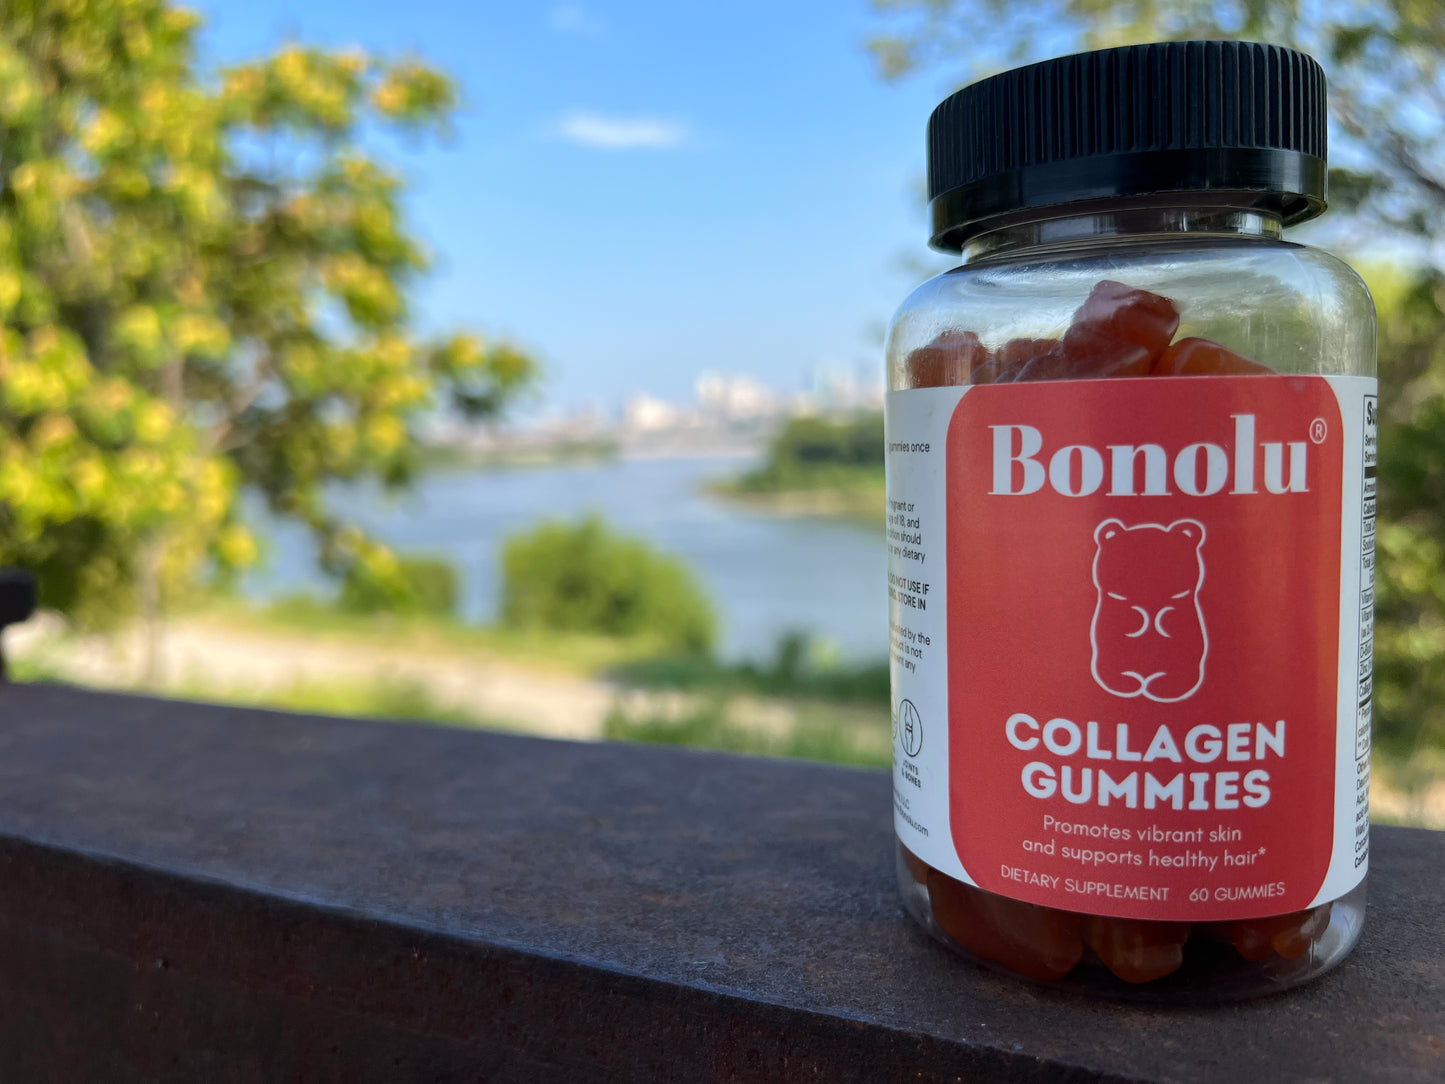 Bonolu Collagen Gummies